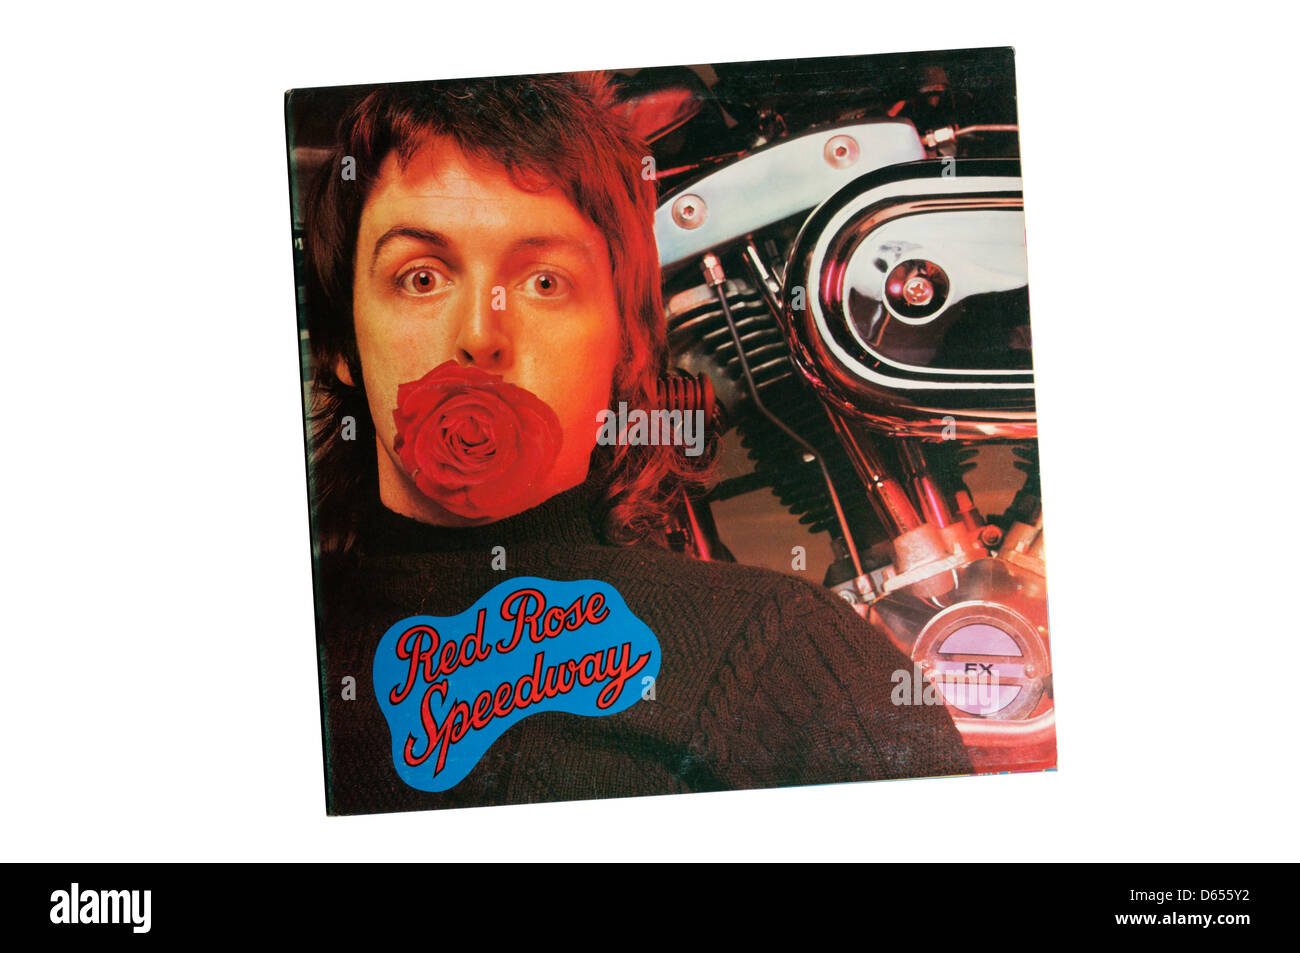 Red Rose Speedway, publié en 1973, est le deuxième album de Paul McCartney et les ailes. Banque D'Images